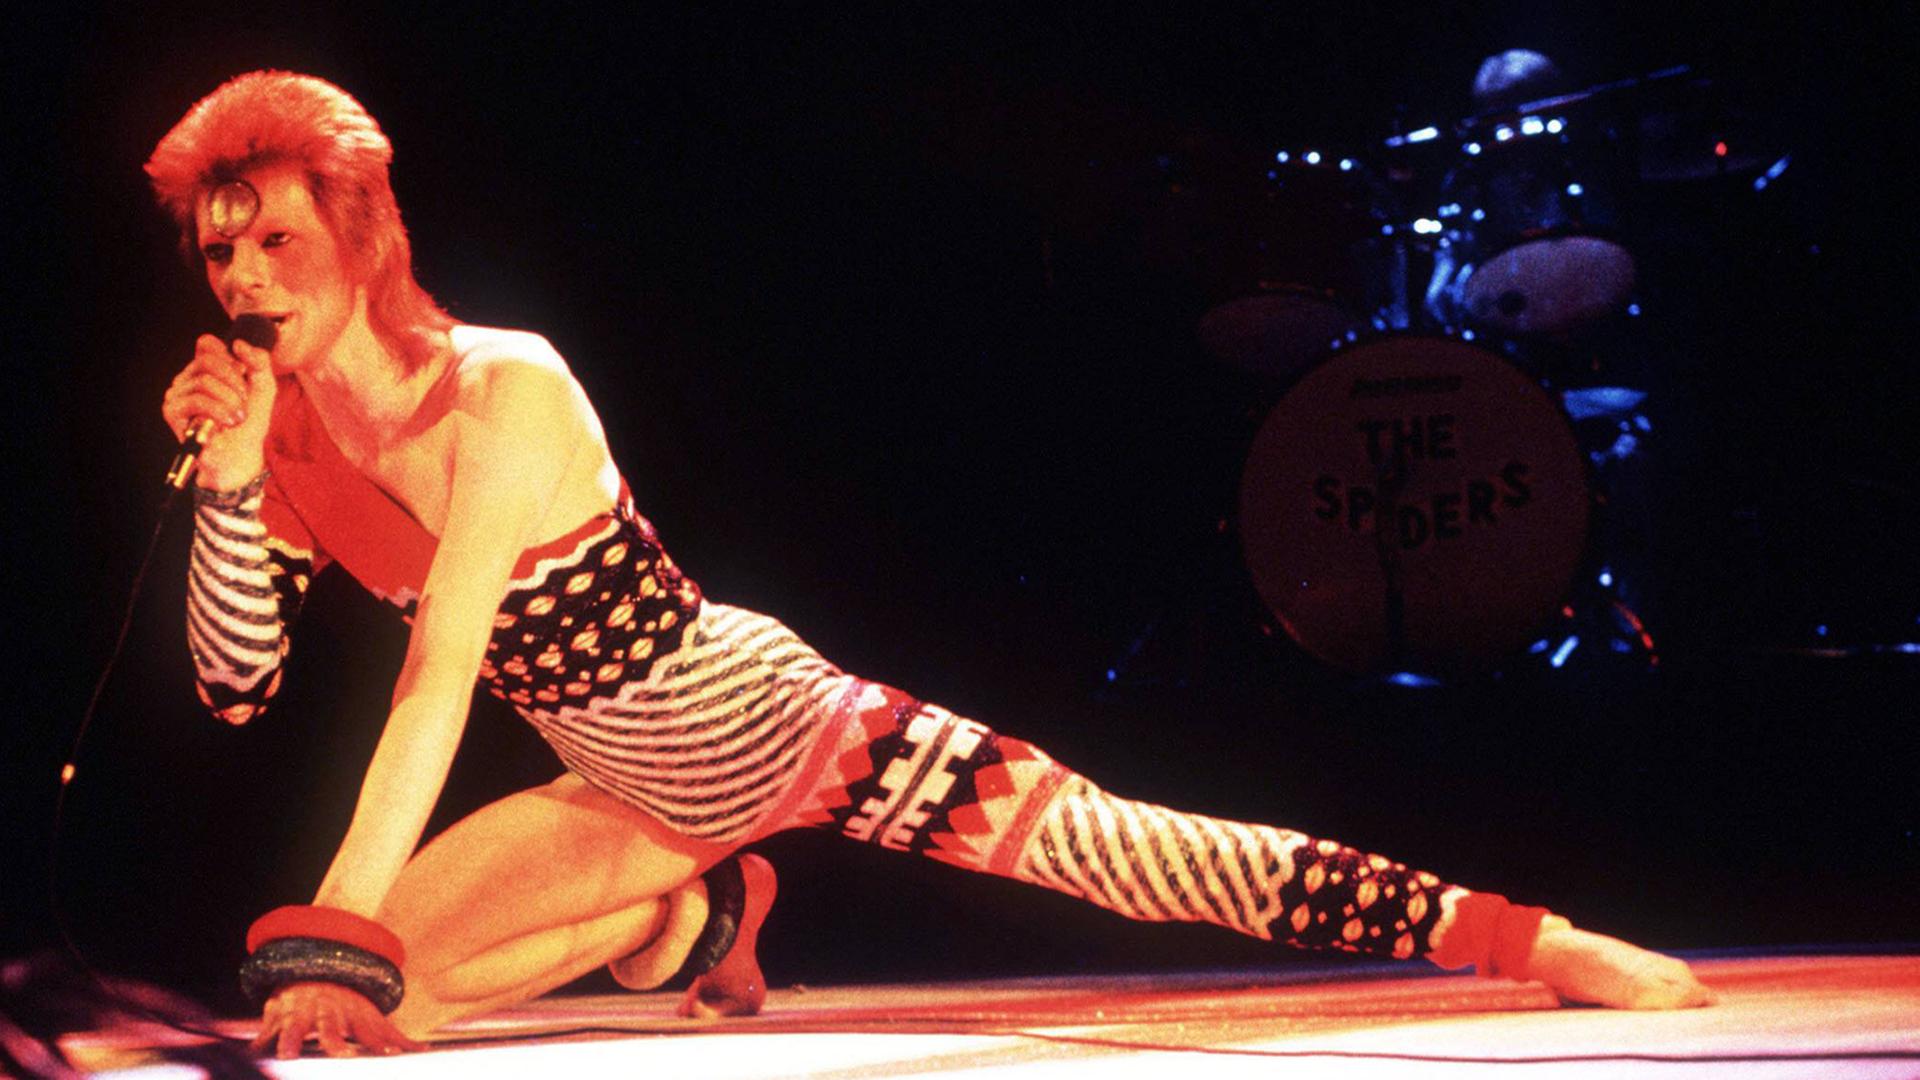 Der Sänger Davis Bowie hockt ei einem Konzert in einem bunten Ganzkörperanzug auf der Bühne.